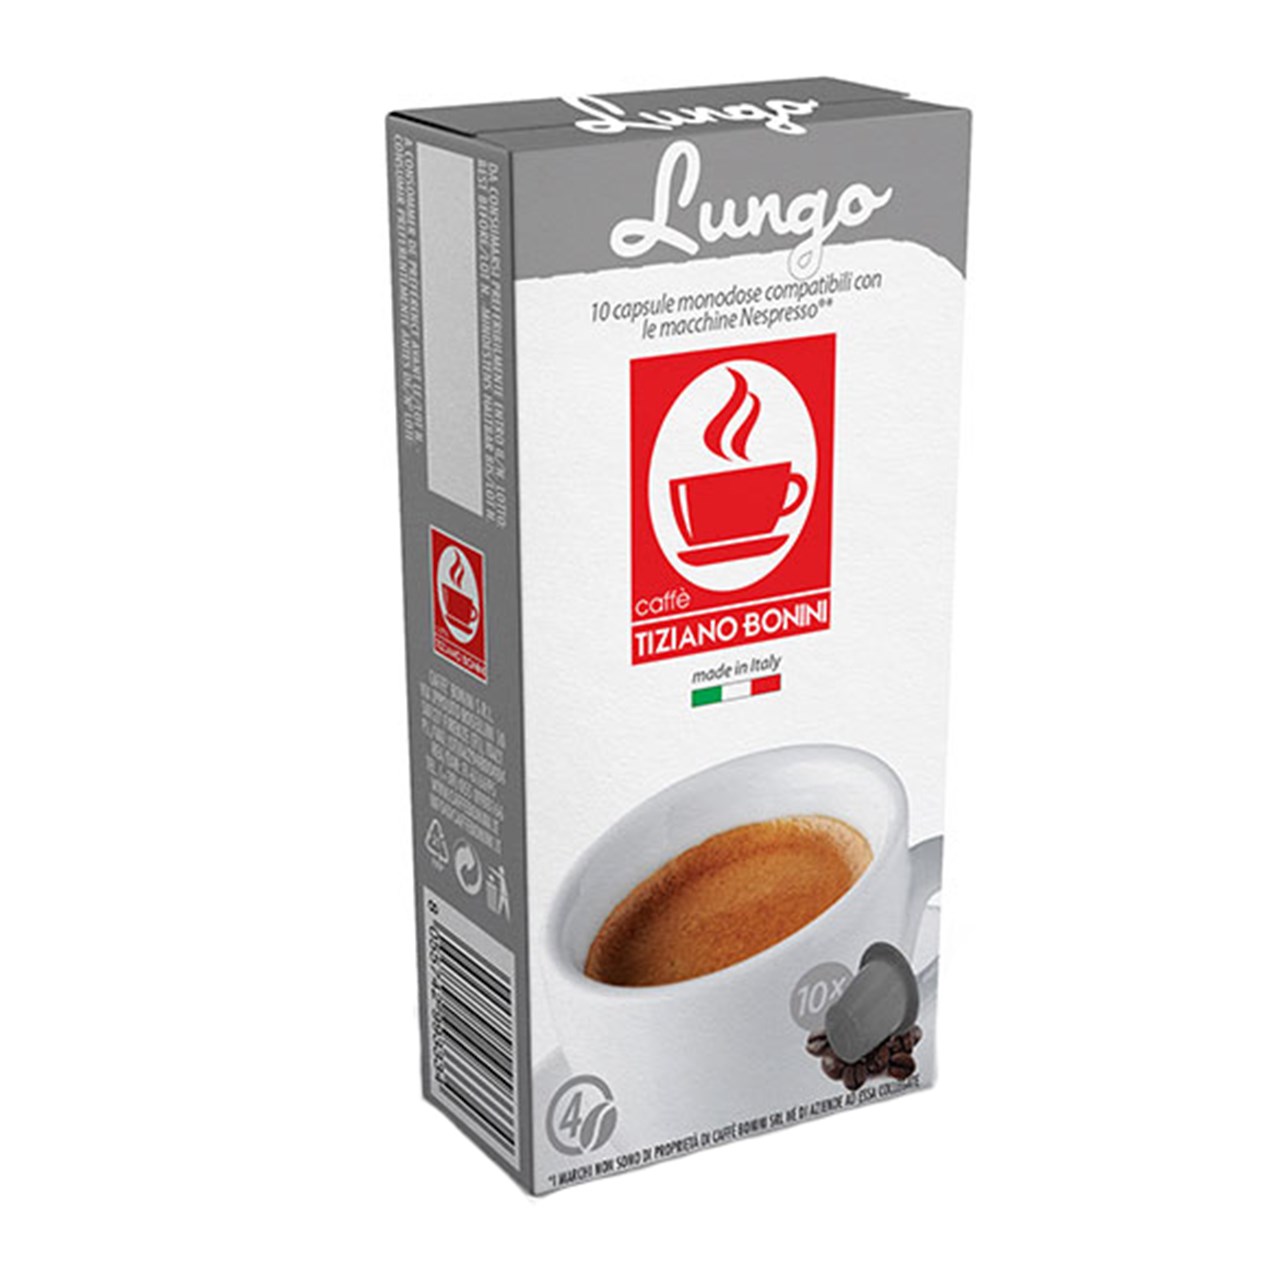 کپسول قهوه تیزیانو بونینی مدل Lungo